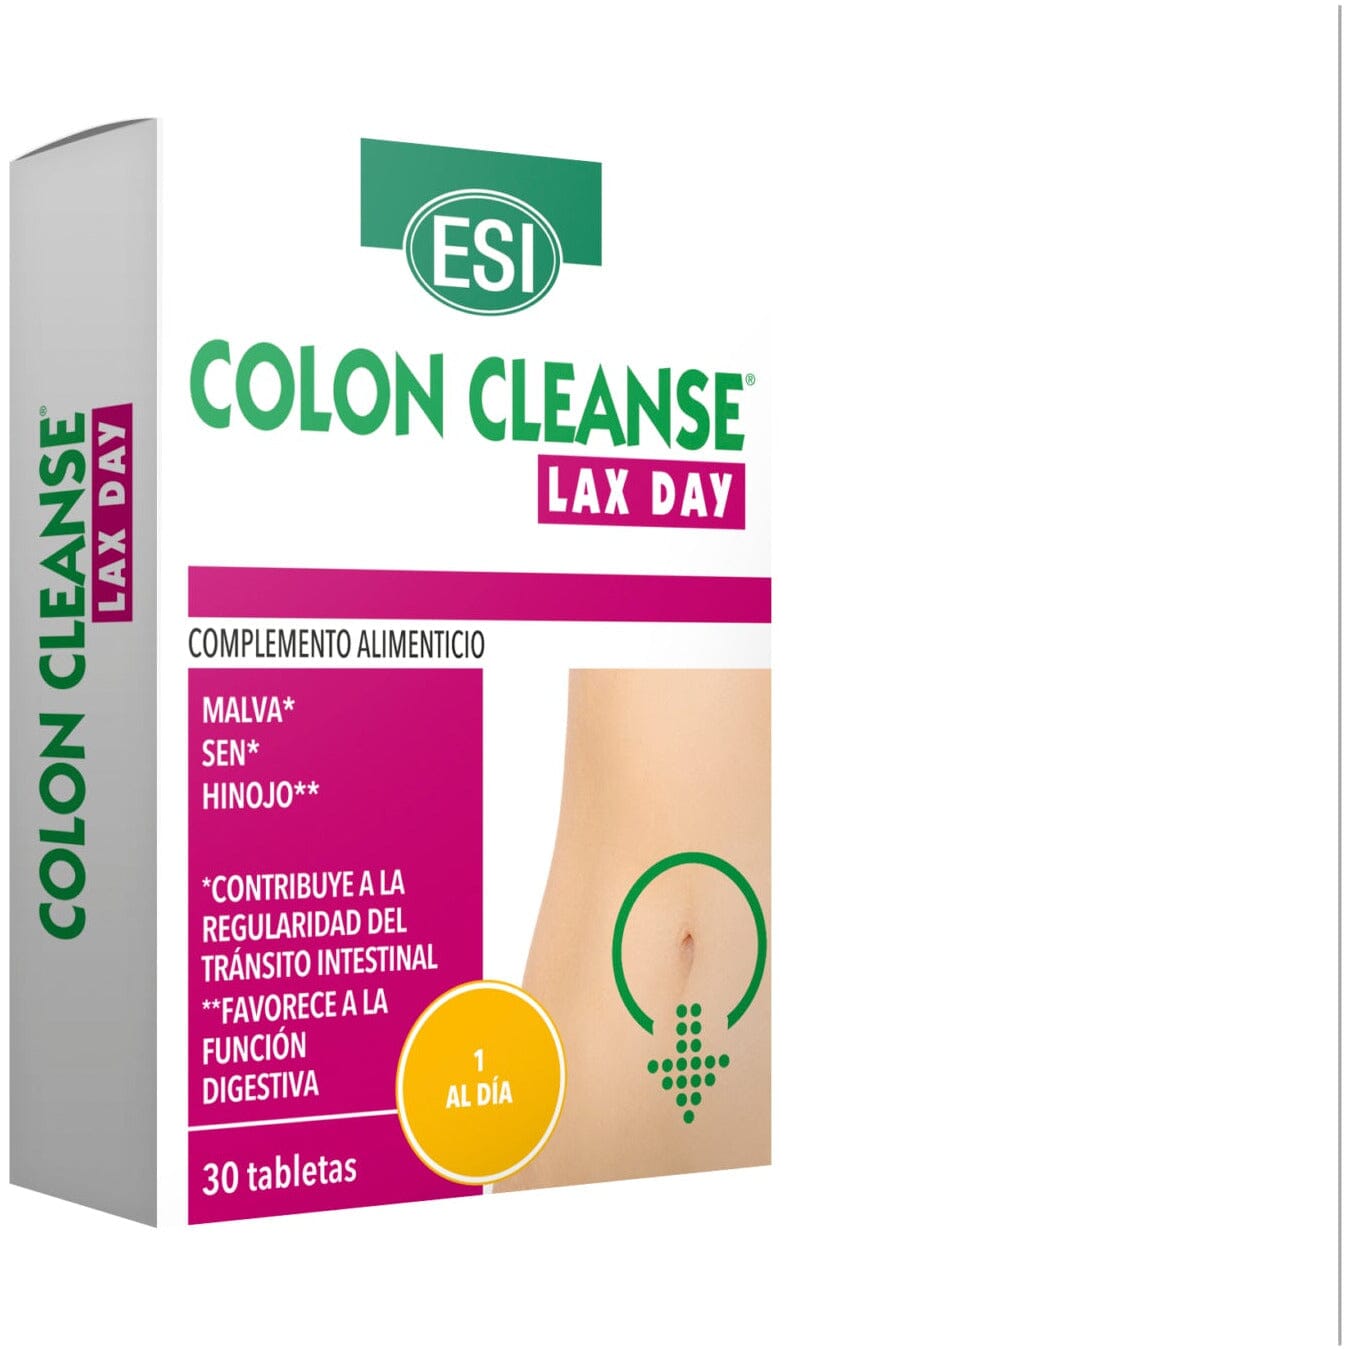 Colon Cleanse Lax Day 30 Tabletas | Esi - Dietetica Ferrer